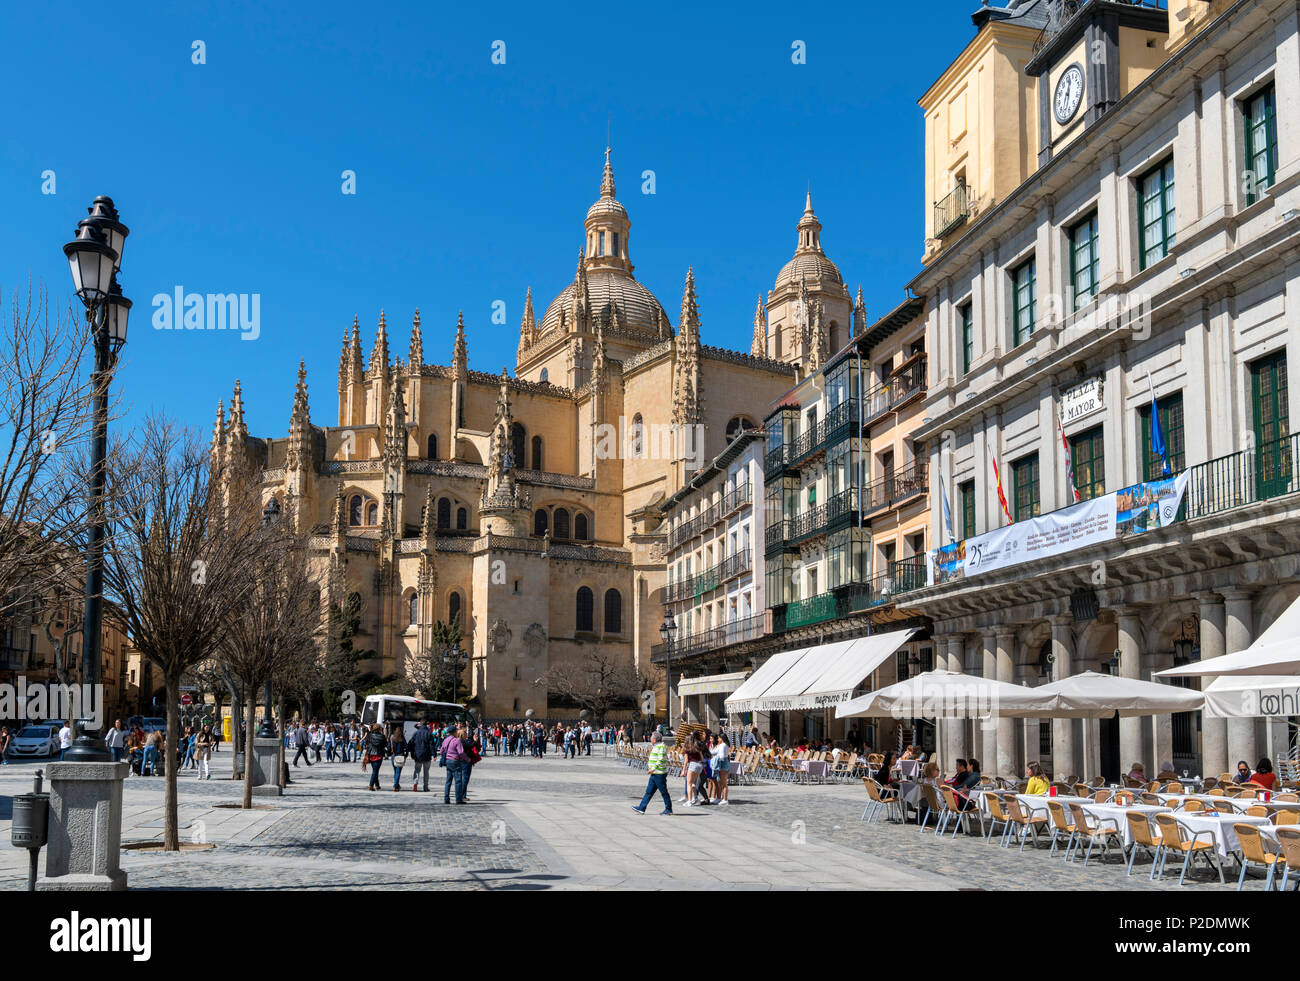 Segovia, Spain. Plaza Mayor looking towards the Cathedral, Segovia, Castilla y Leon, Spain Stock Photo